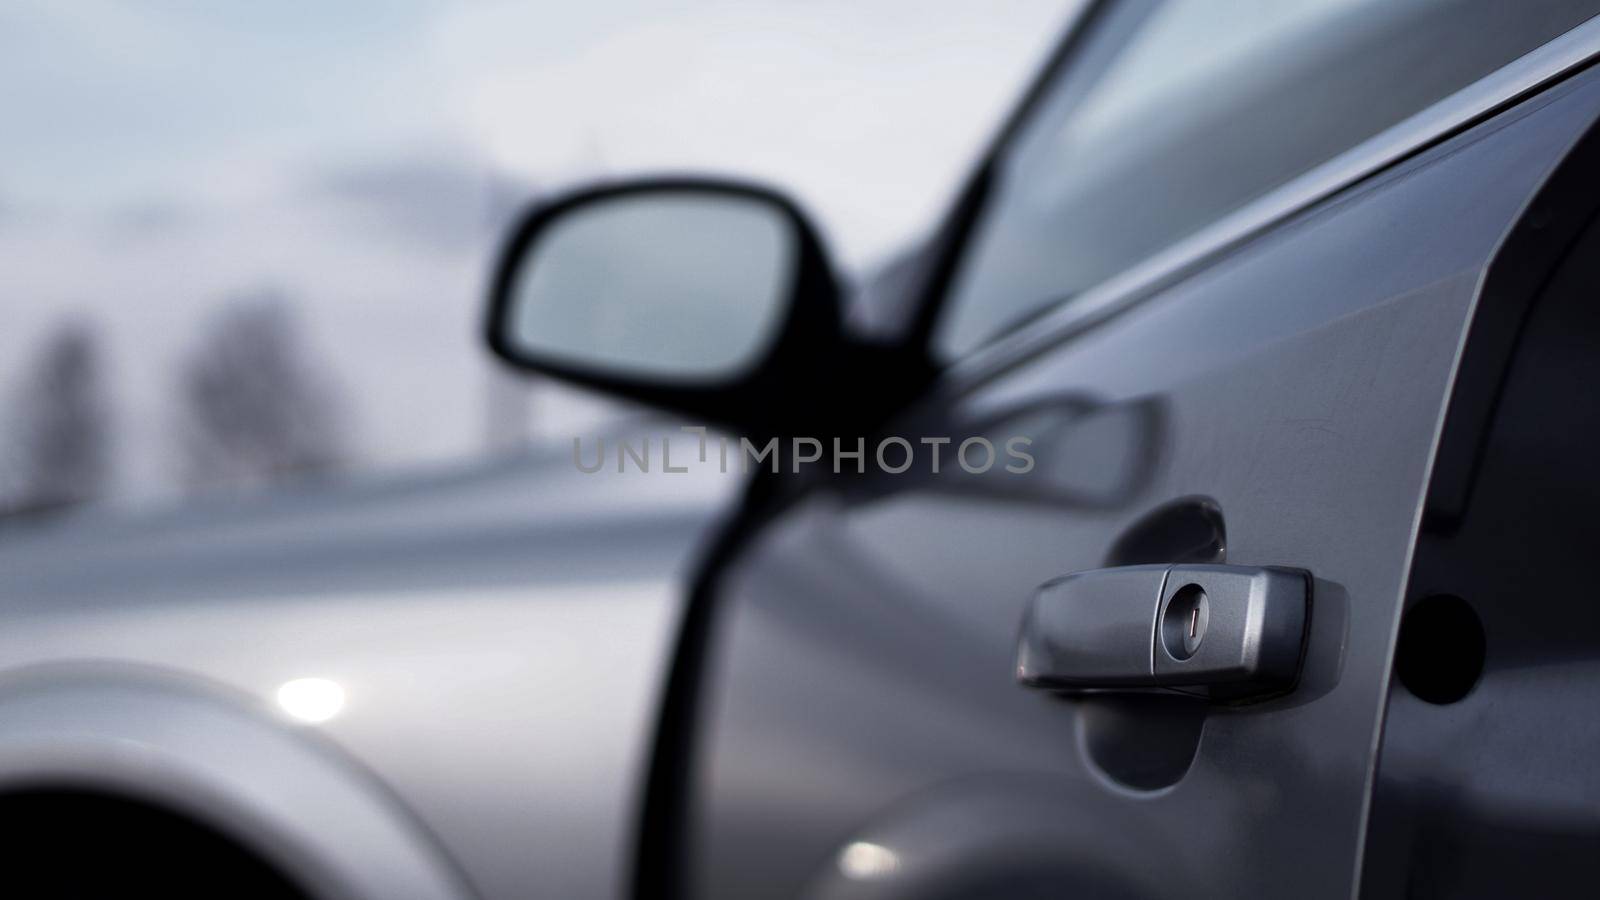 Color horizontal shot of a dark silver car door handle by natali_brill